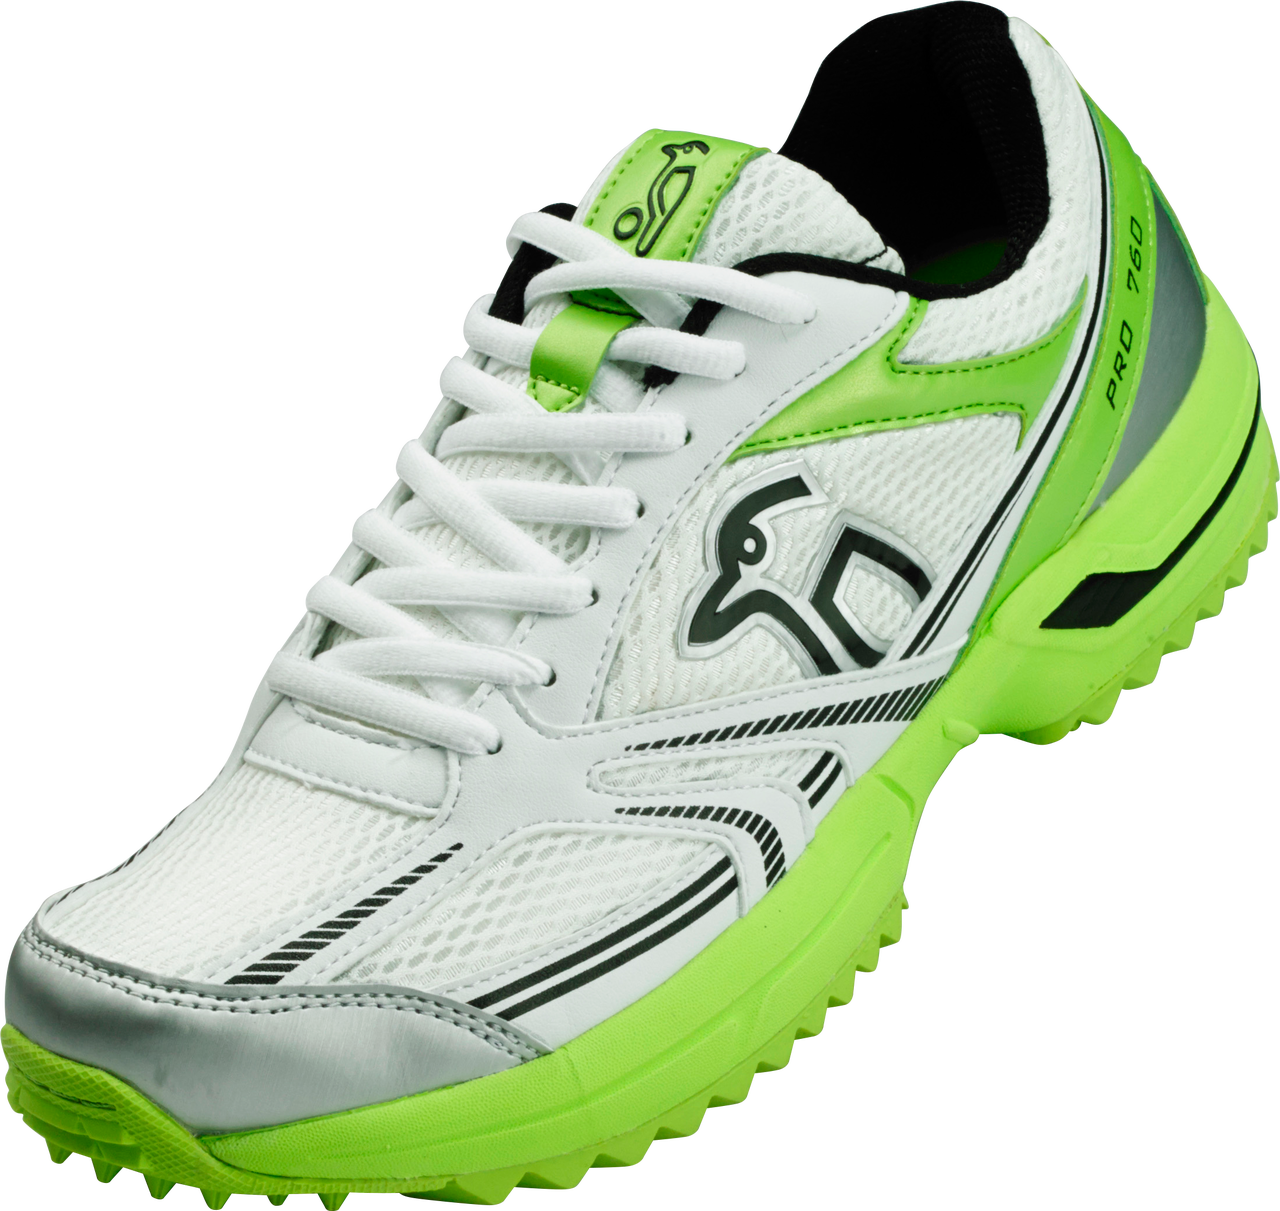 Kookaburra Pro Rubber Stud Cricket Shoes Green Silver - Kookaburra Shoes Clipart (1280x1211), Png Download